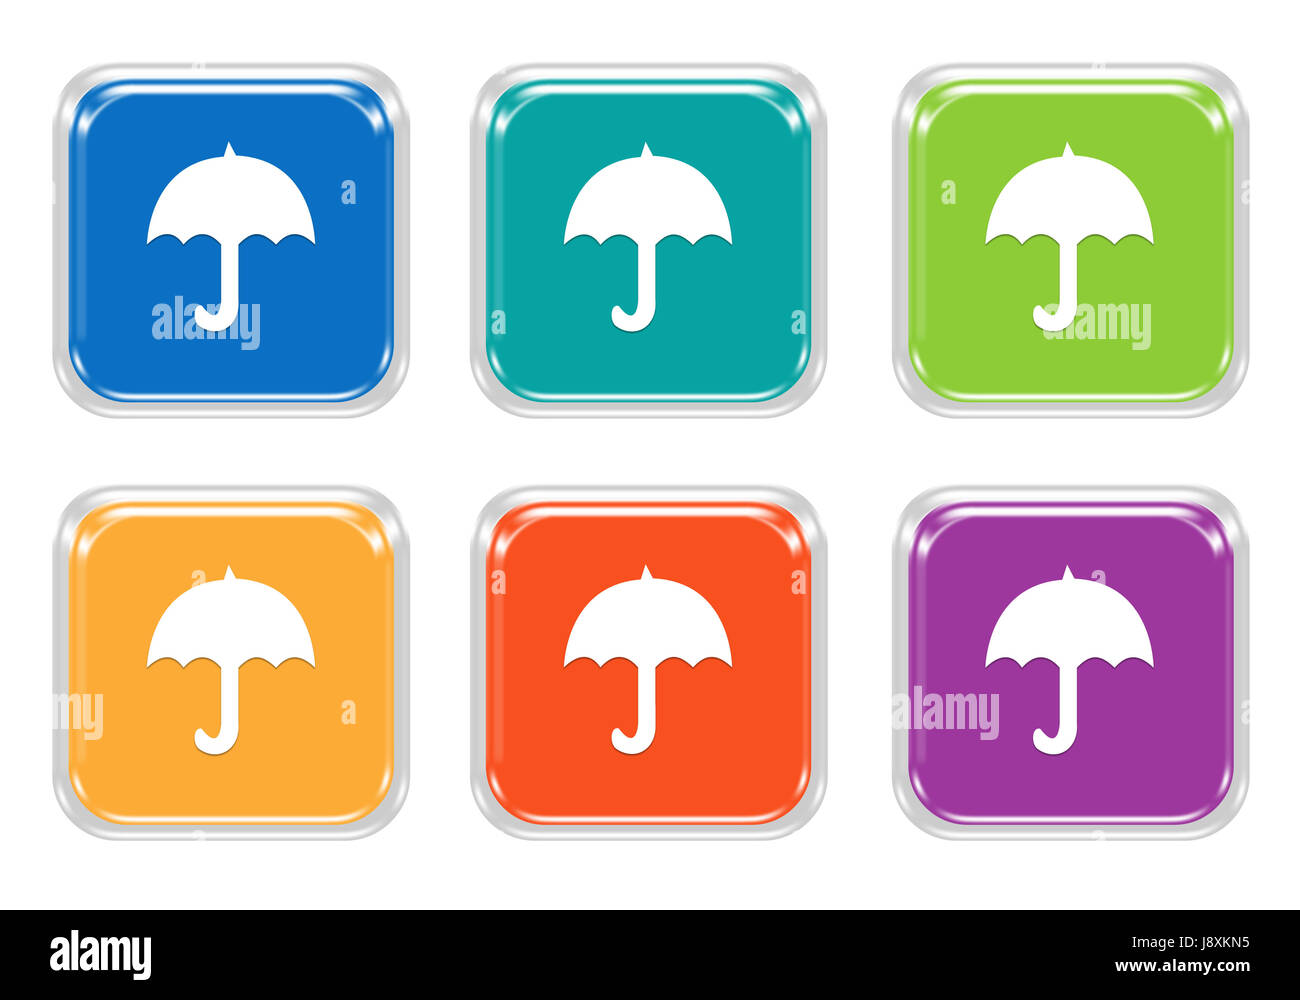 Satz von quadratischen bunten Tasten mit Regenschirm-Symbol in blau, grün, gelb, orange und lila Farben Stockfoto